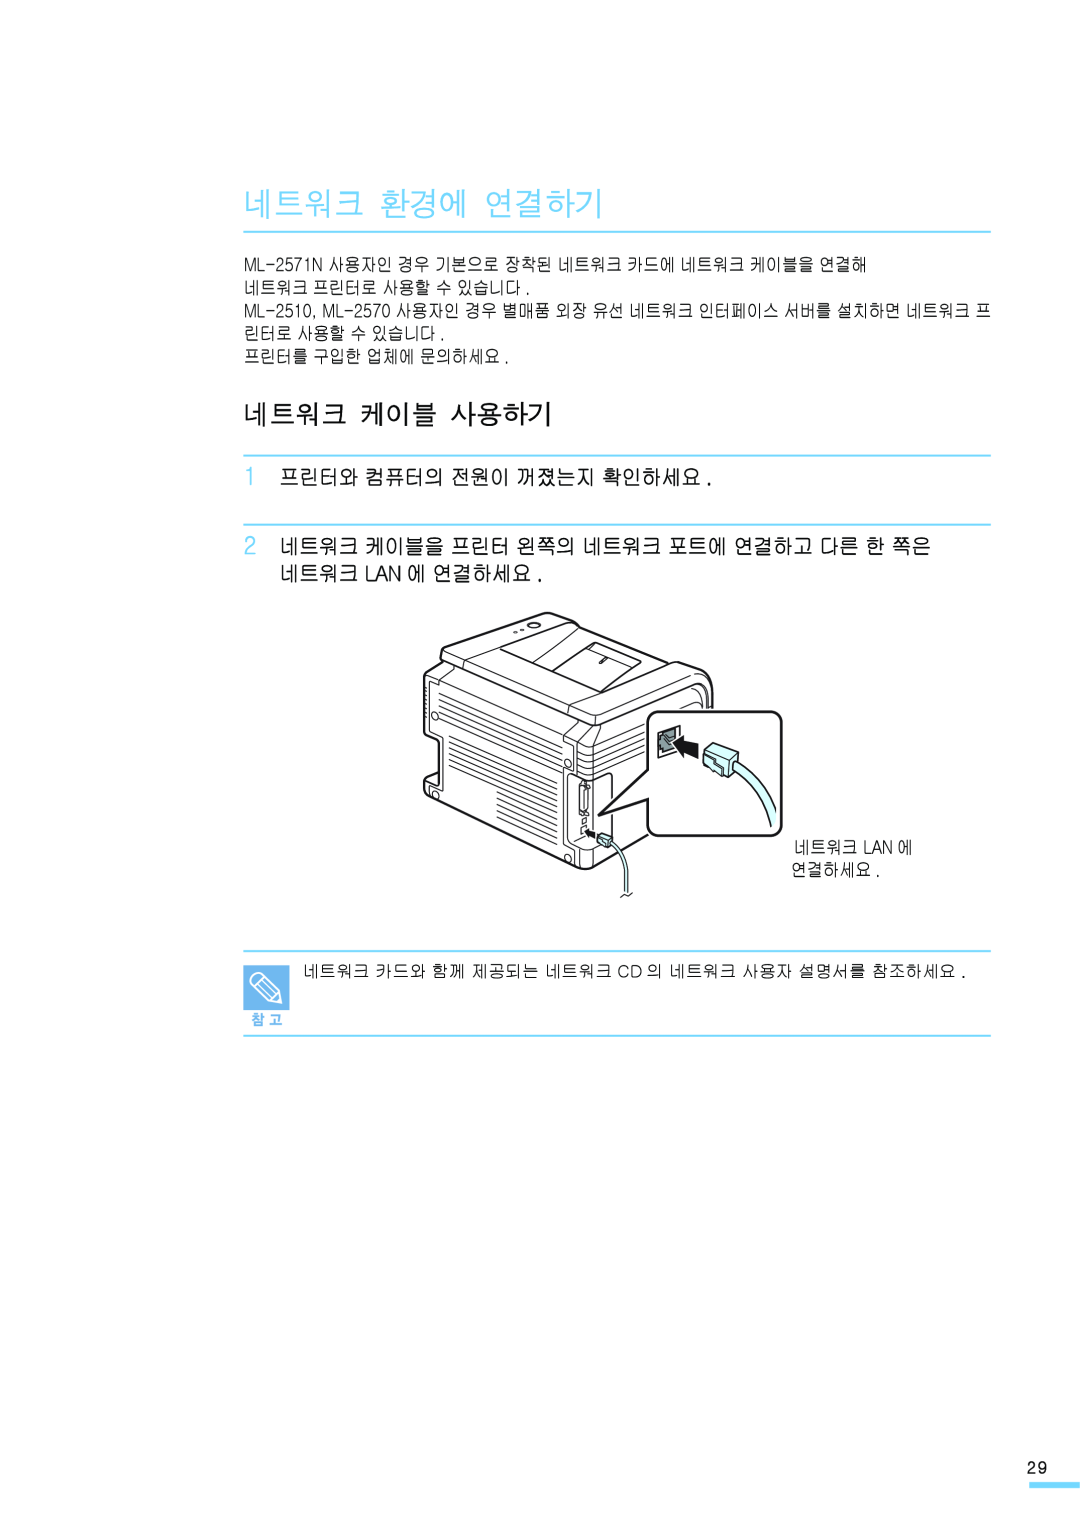 Samsung ML-2571N manual 네트워크 환경에 연결하기, 네트워크 케이블 사용하기, 1 프린터와 컴퓨터의 전원이 꺼졌는지 확인하세요, 프린터를 구입한 업체에 문의하세요, 네트워크 Lan 에 연결하세요 